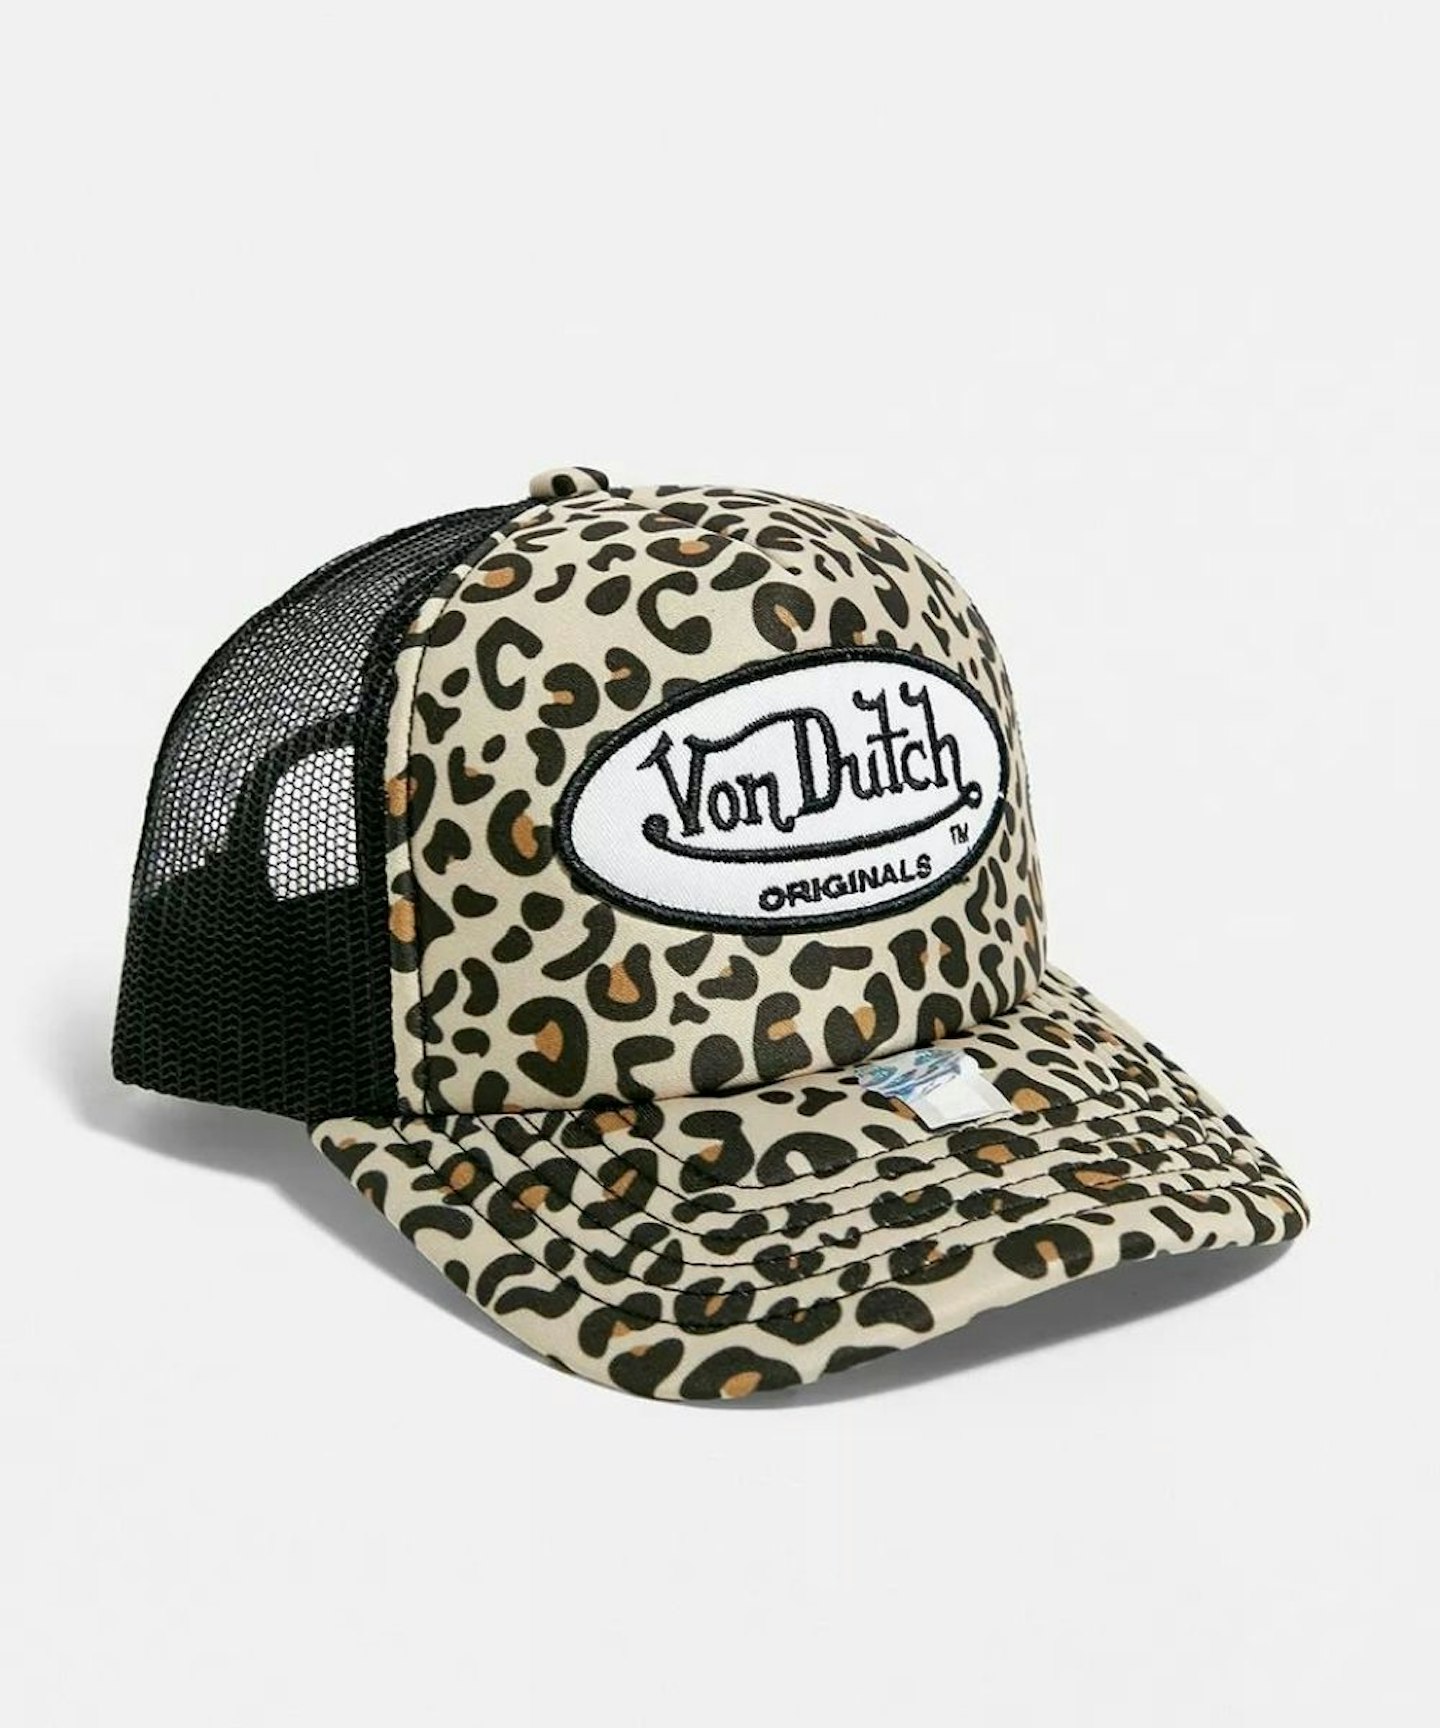 Von Dutch Leopard Print Trucker Tampa Hat